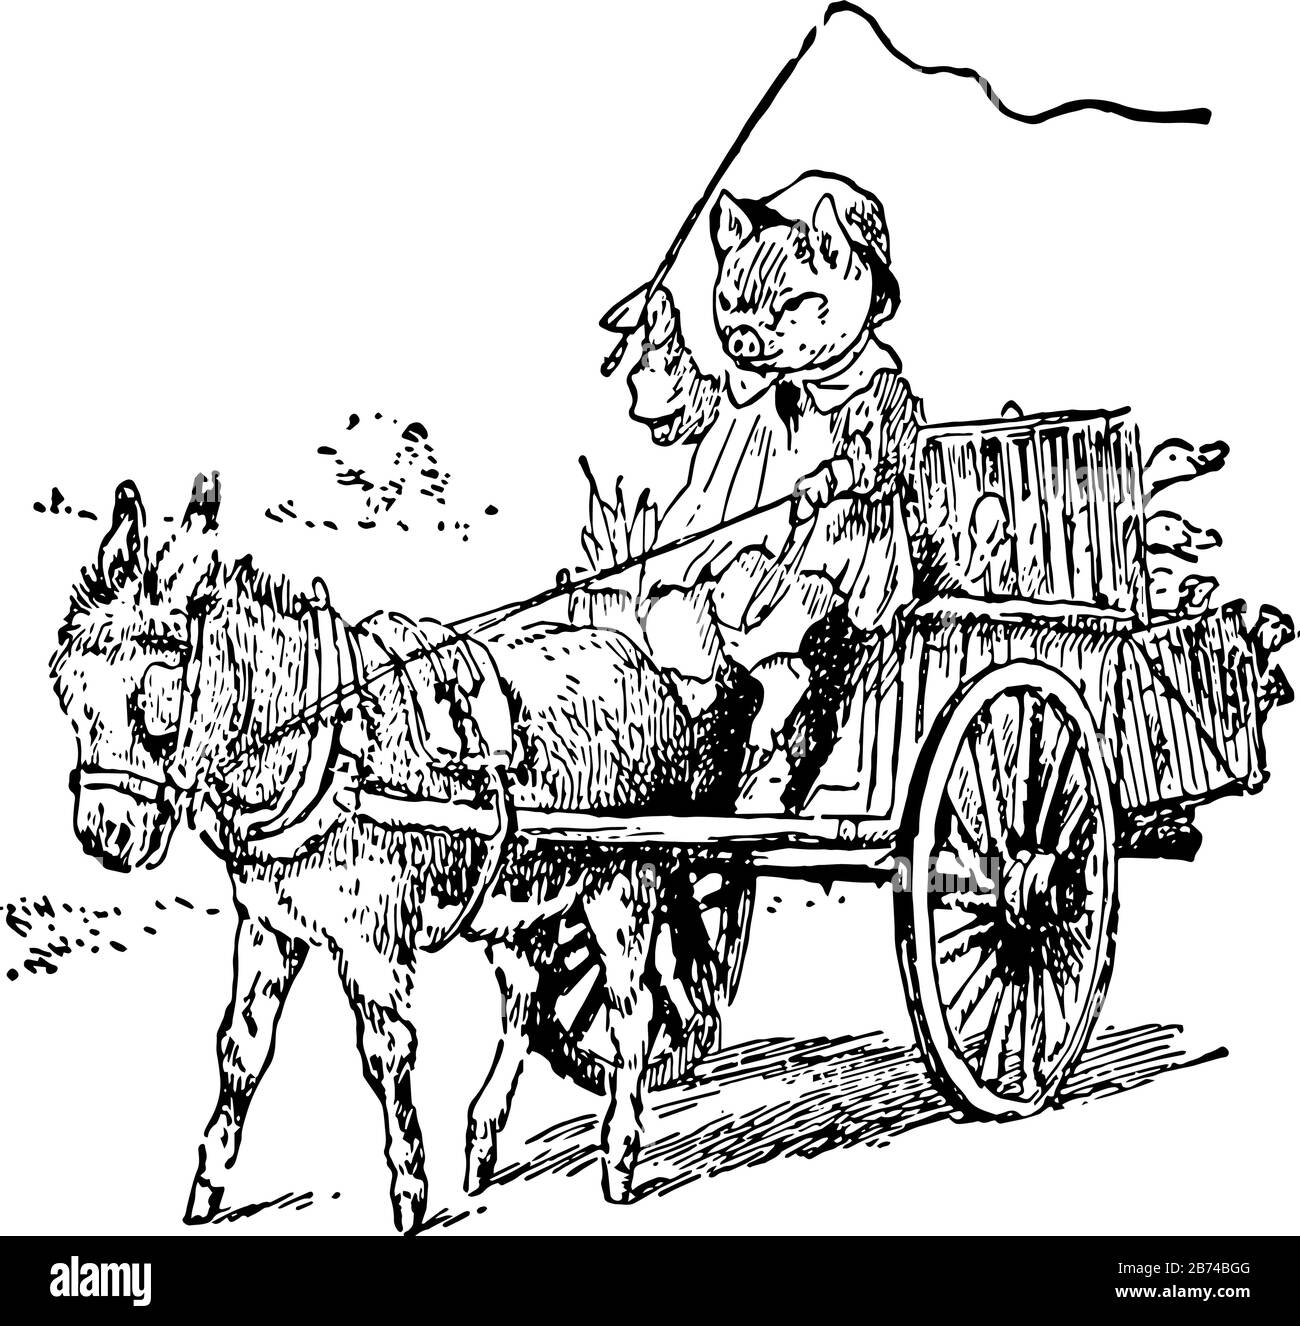 Pig Est Allé au marché, cette scène montre un cochon conduisant un chariot tiré par un âne, dessin vintage de ligne ou de gravure illustration Illustration de Vecteur